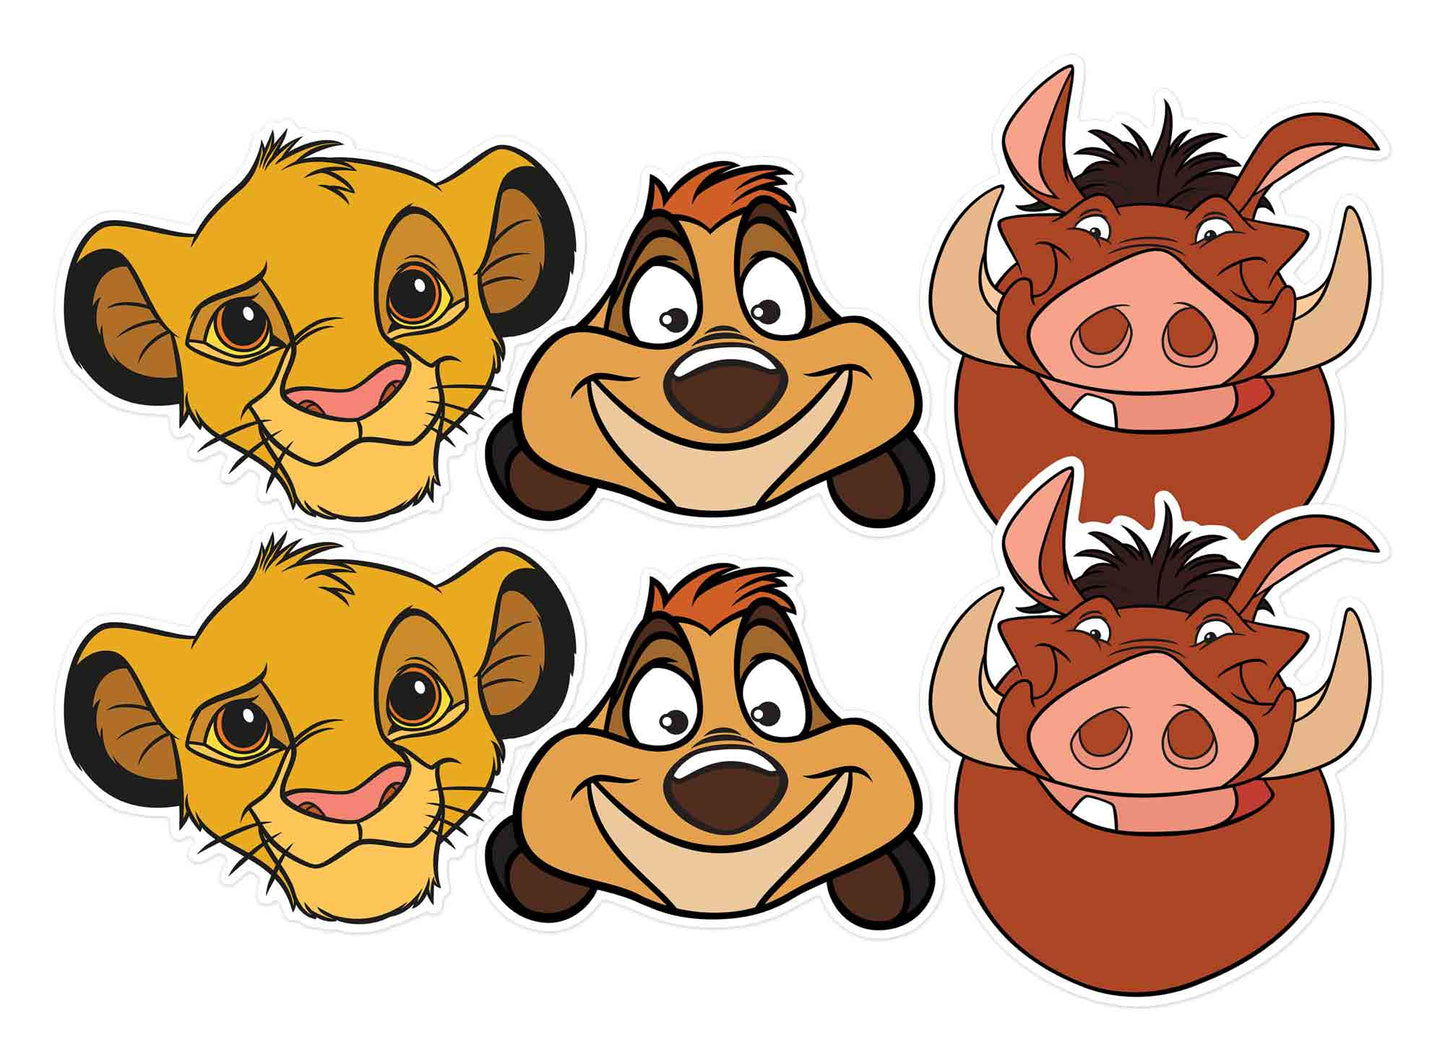 SMP424 Lion King -  ( Simba x 2, Timon x 2, Pumbaa x 2)  Six Pack Cardboard Face Masks